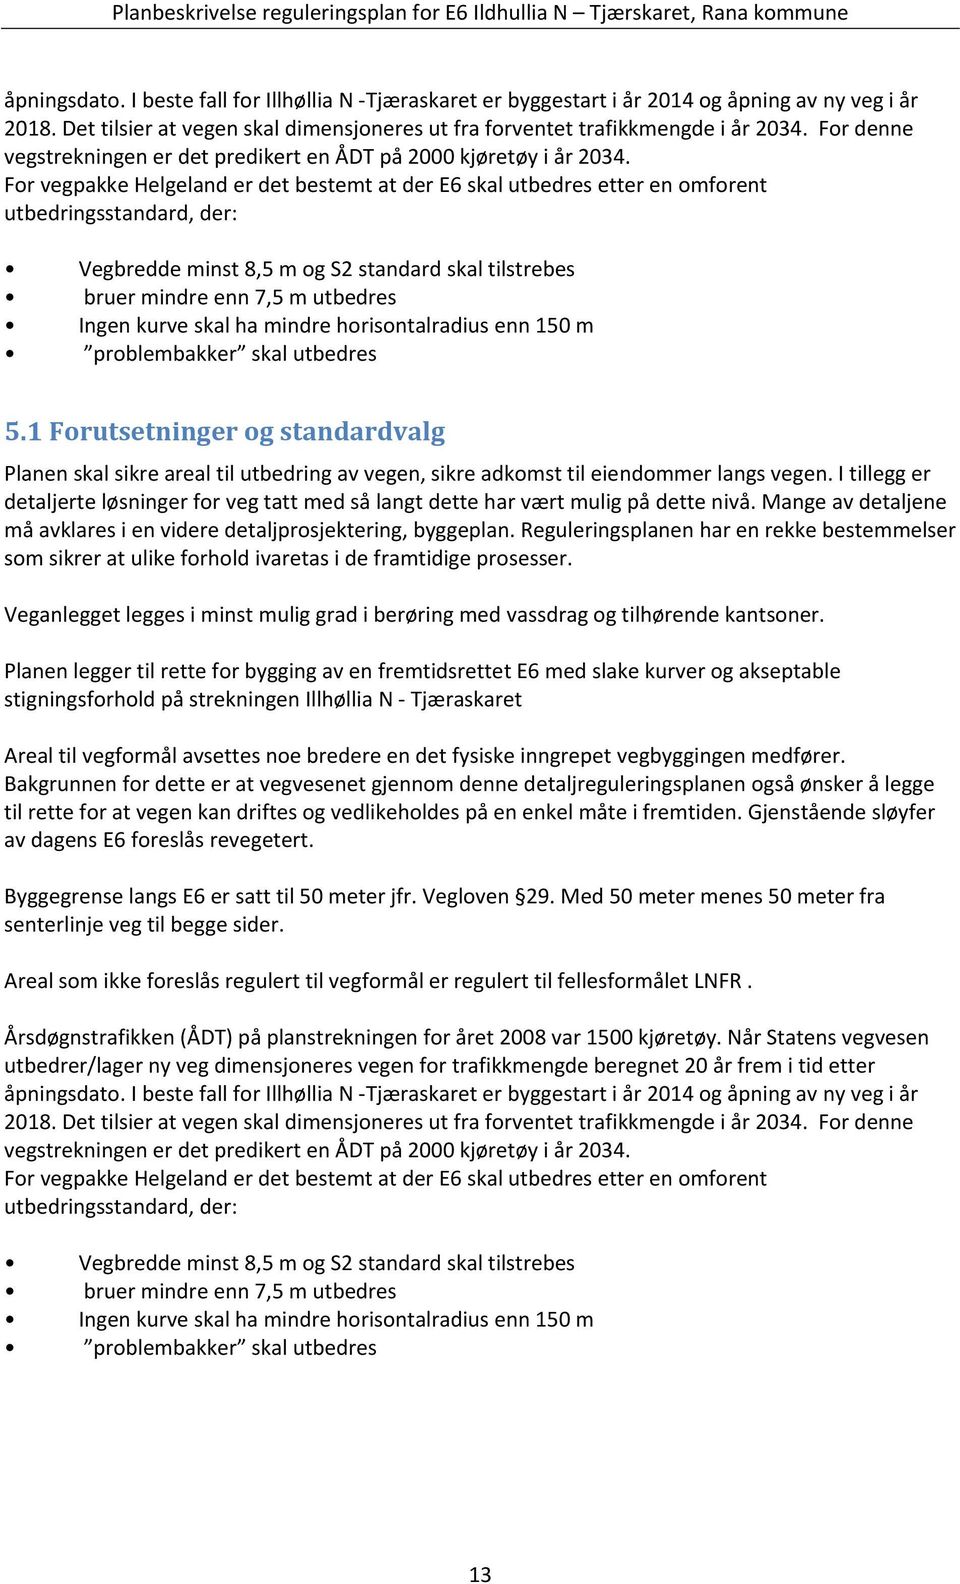 For vegpakke Helgeland er det bestemt at der E6 skal utbedres etter en omforent utbedringsstandard, der: Vegbredde minst 8,5 m og S2 standard skal tilstrebes bruer mindre enn 7,5 m utbedres Ingen